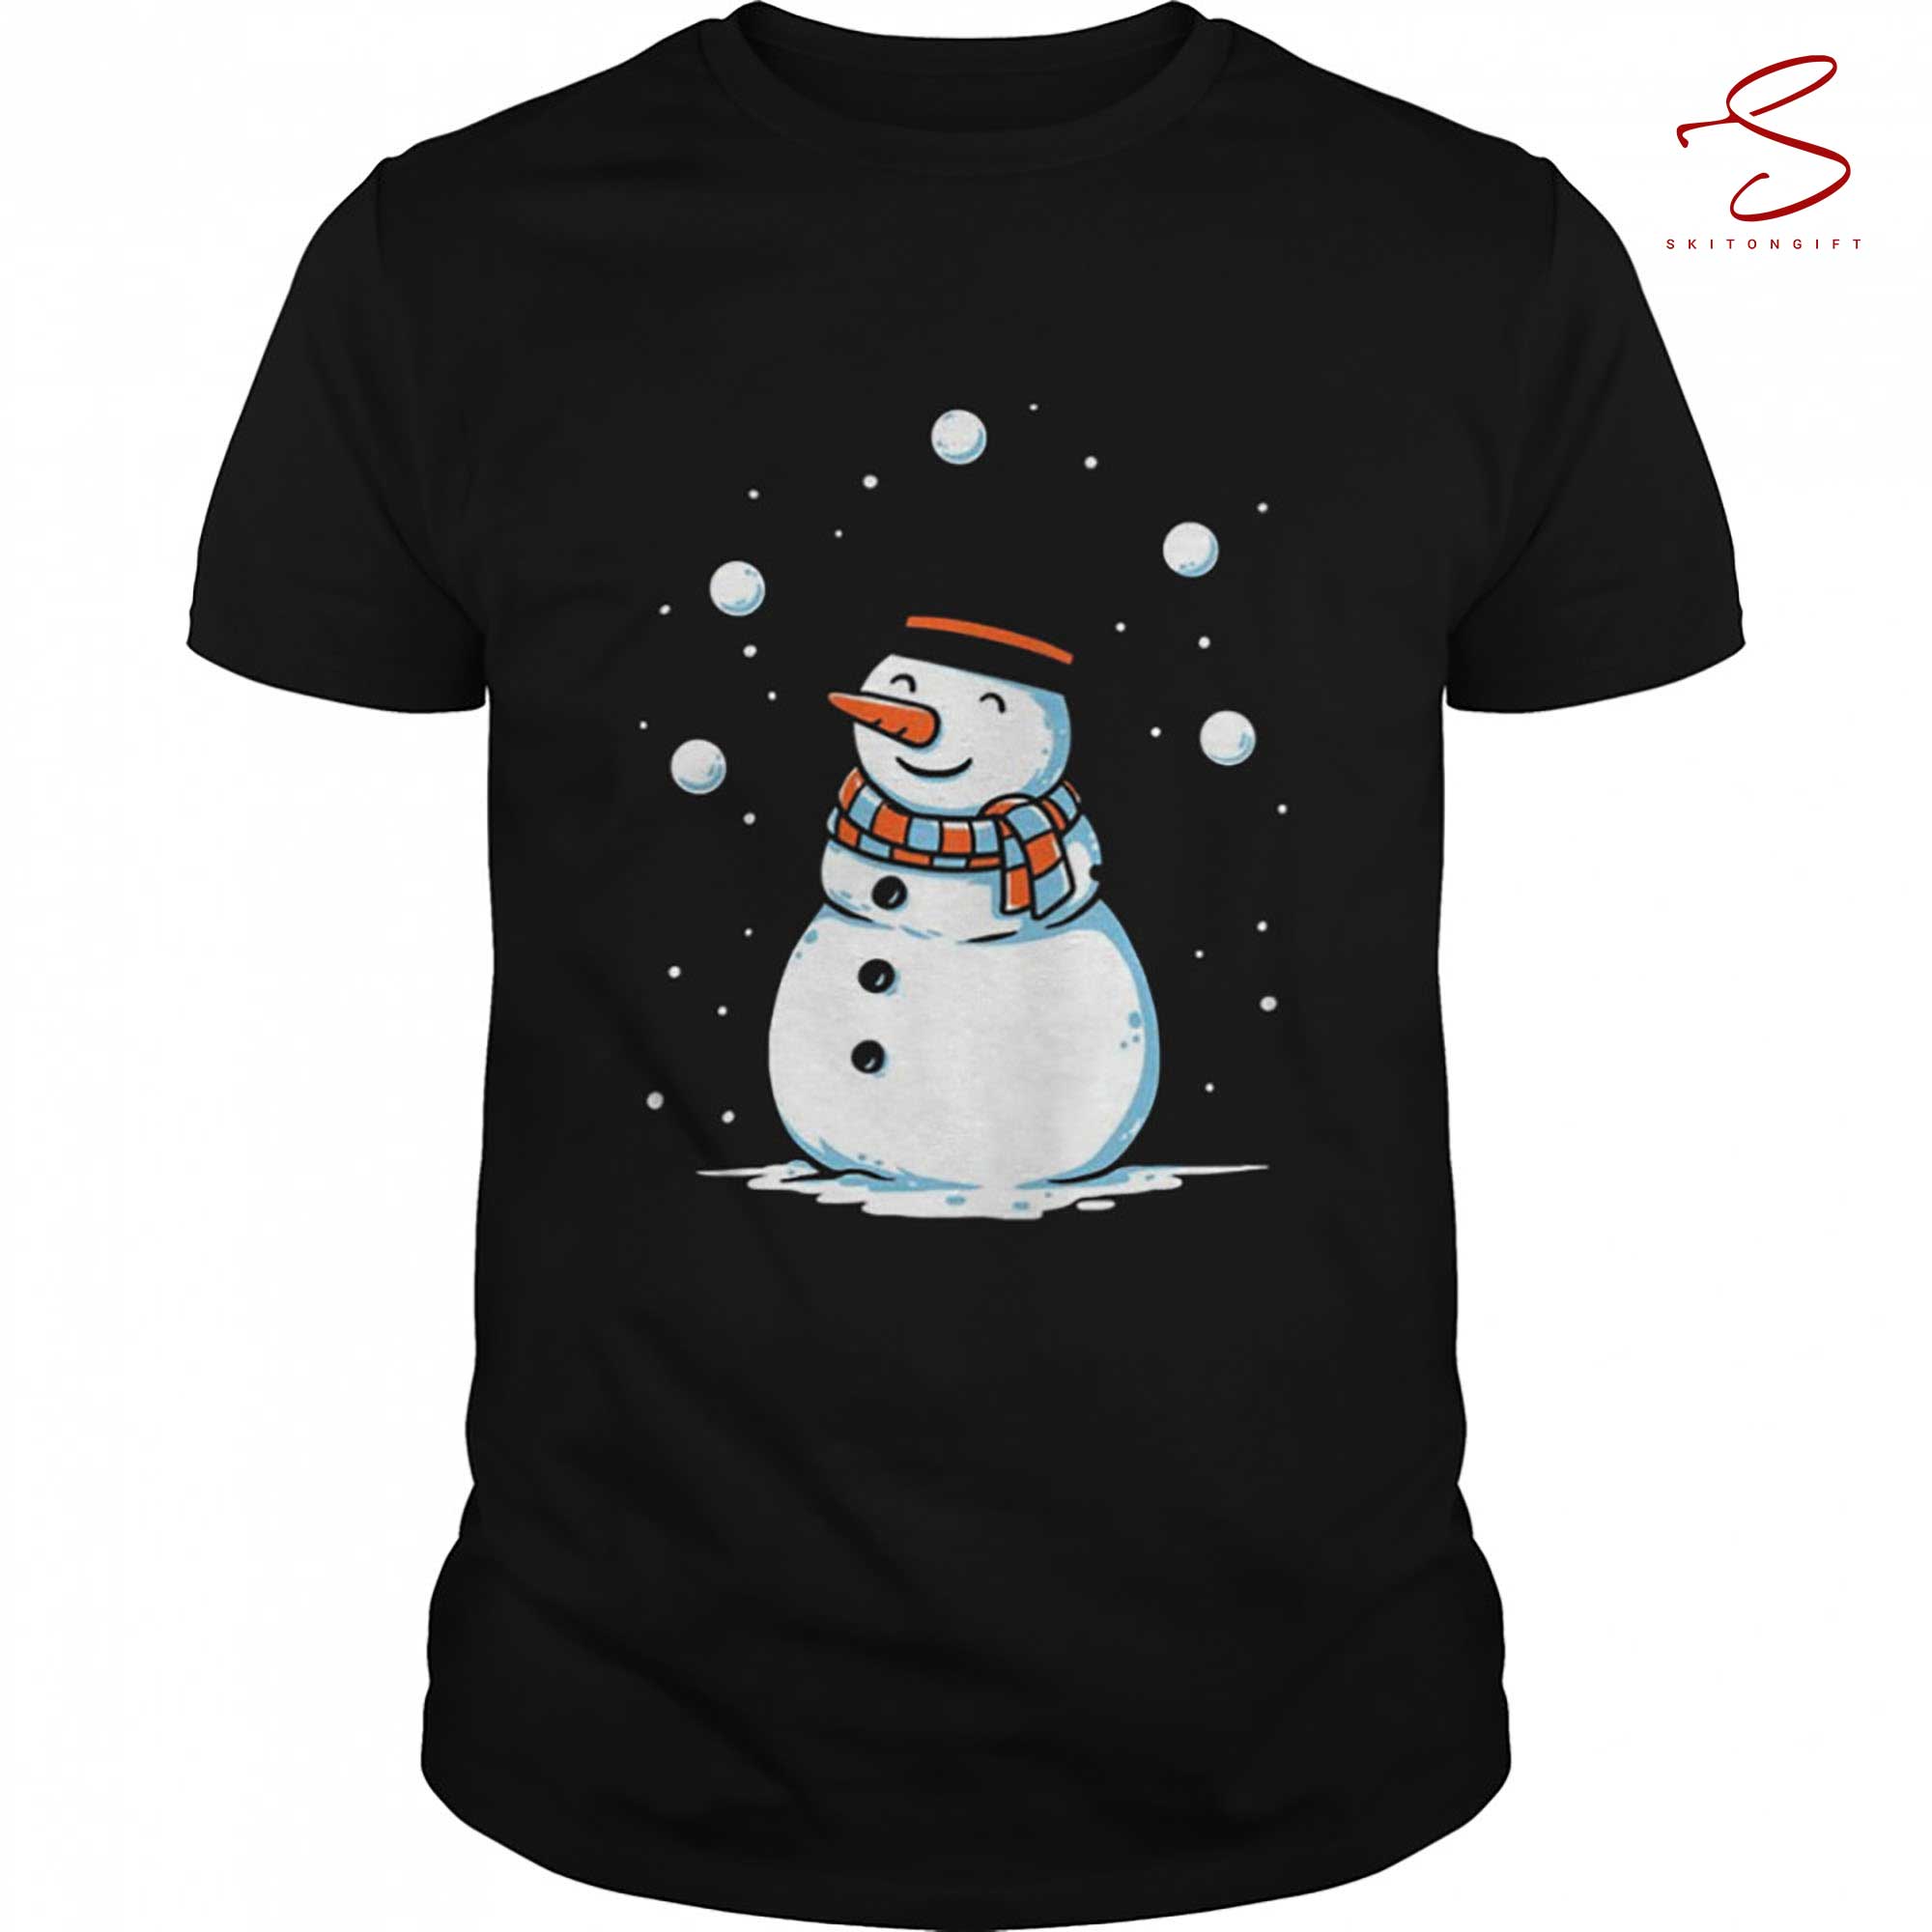 Skitongift Juggling Snowman Wanna See Magic Shirt